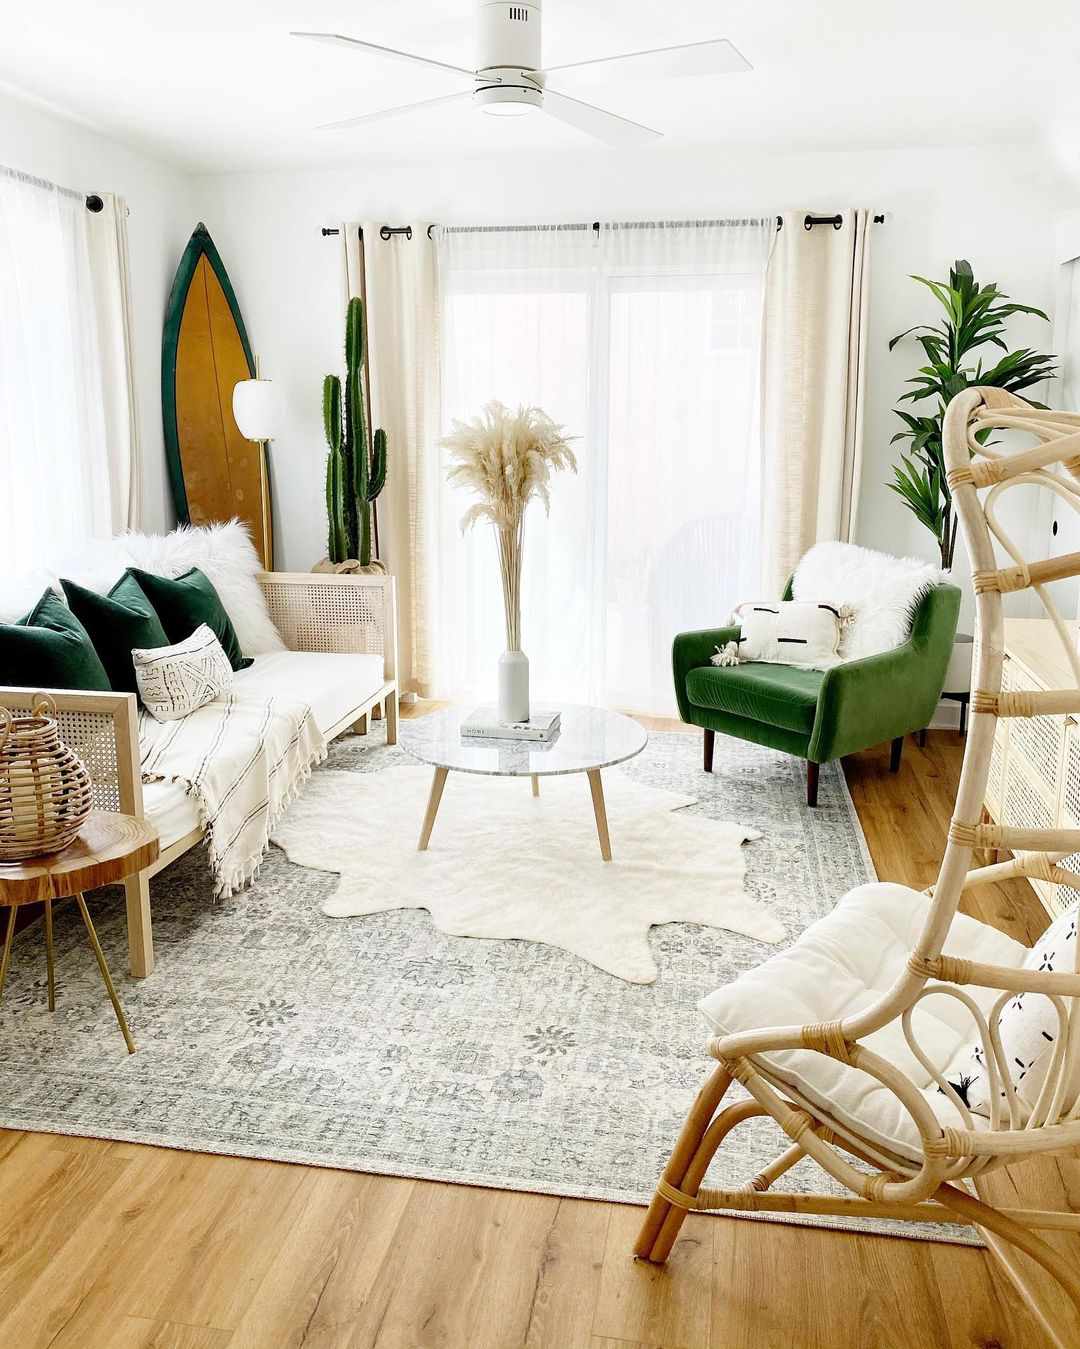 Un salon neutre avec des touches de vert profond, une planche de surf dans le coin et deux tapis superposés